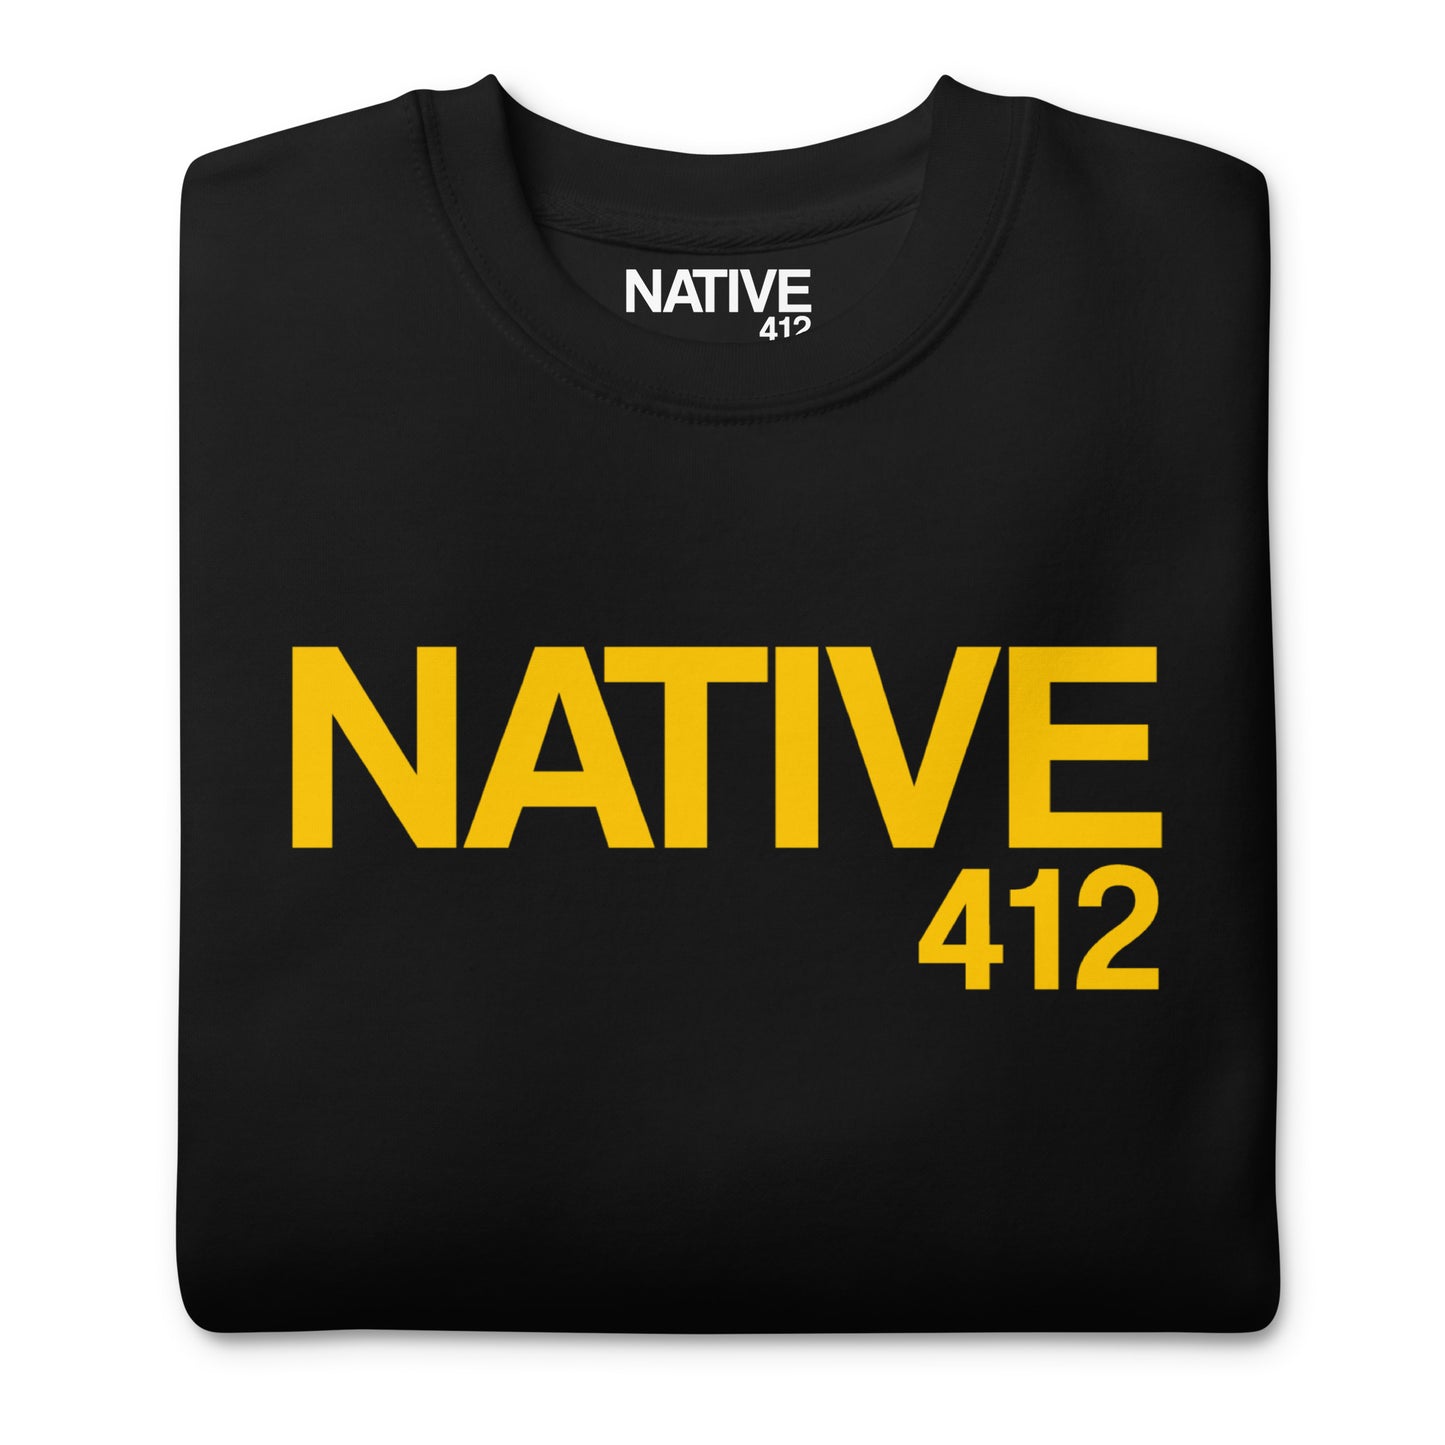 Native 412 Classic Black & Gold Unisex Premium Sweatshirt